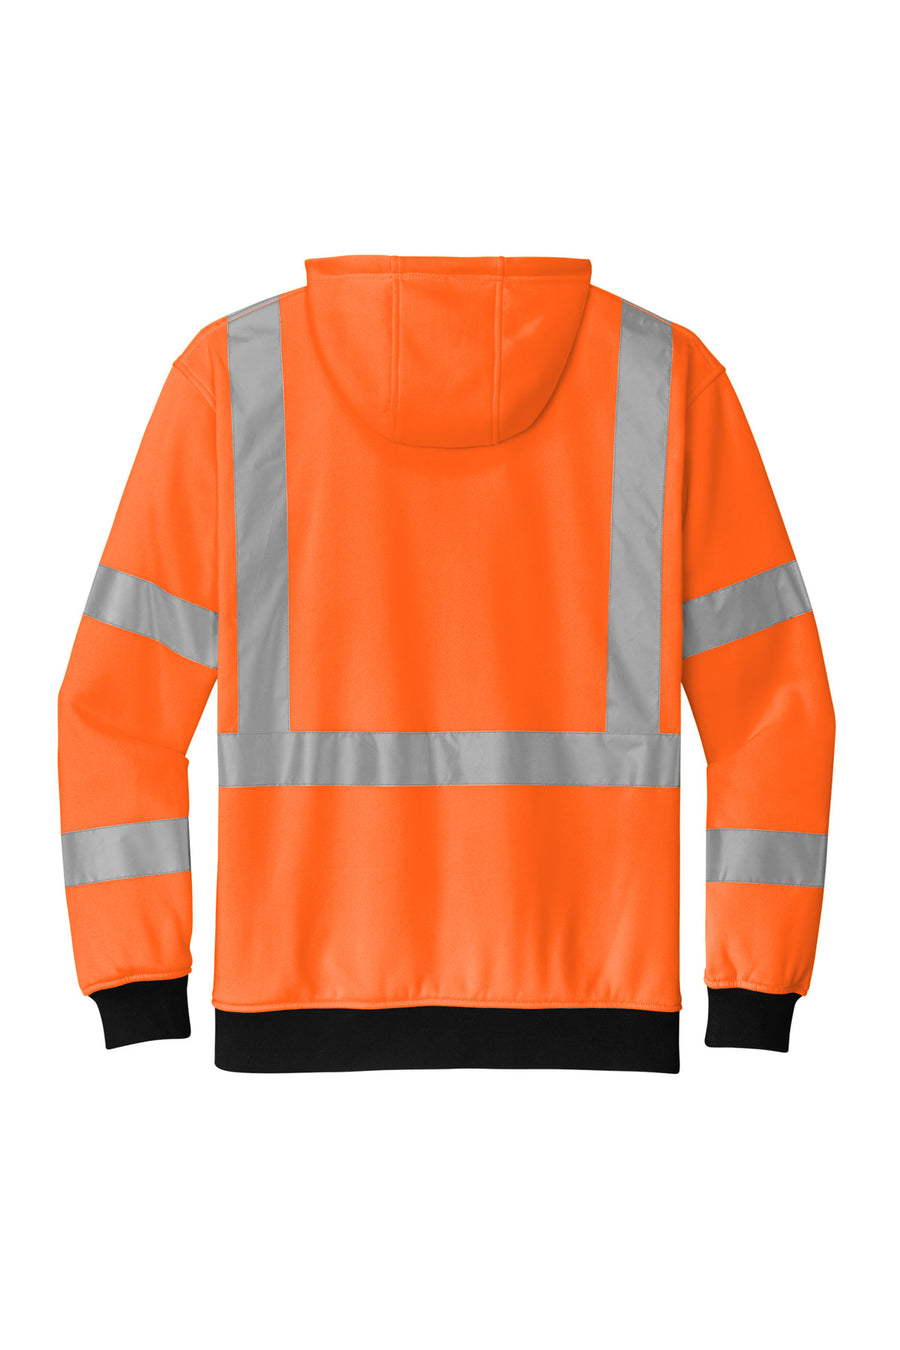 CSF300-Safety Orange-back_flat